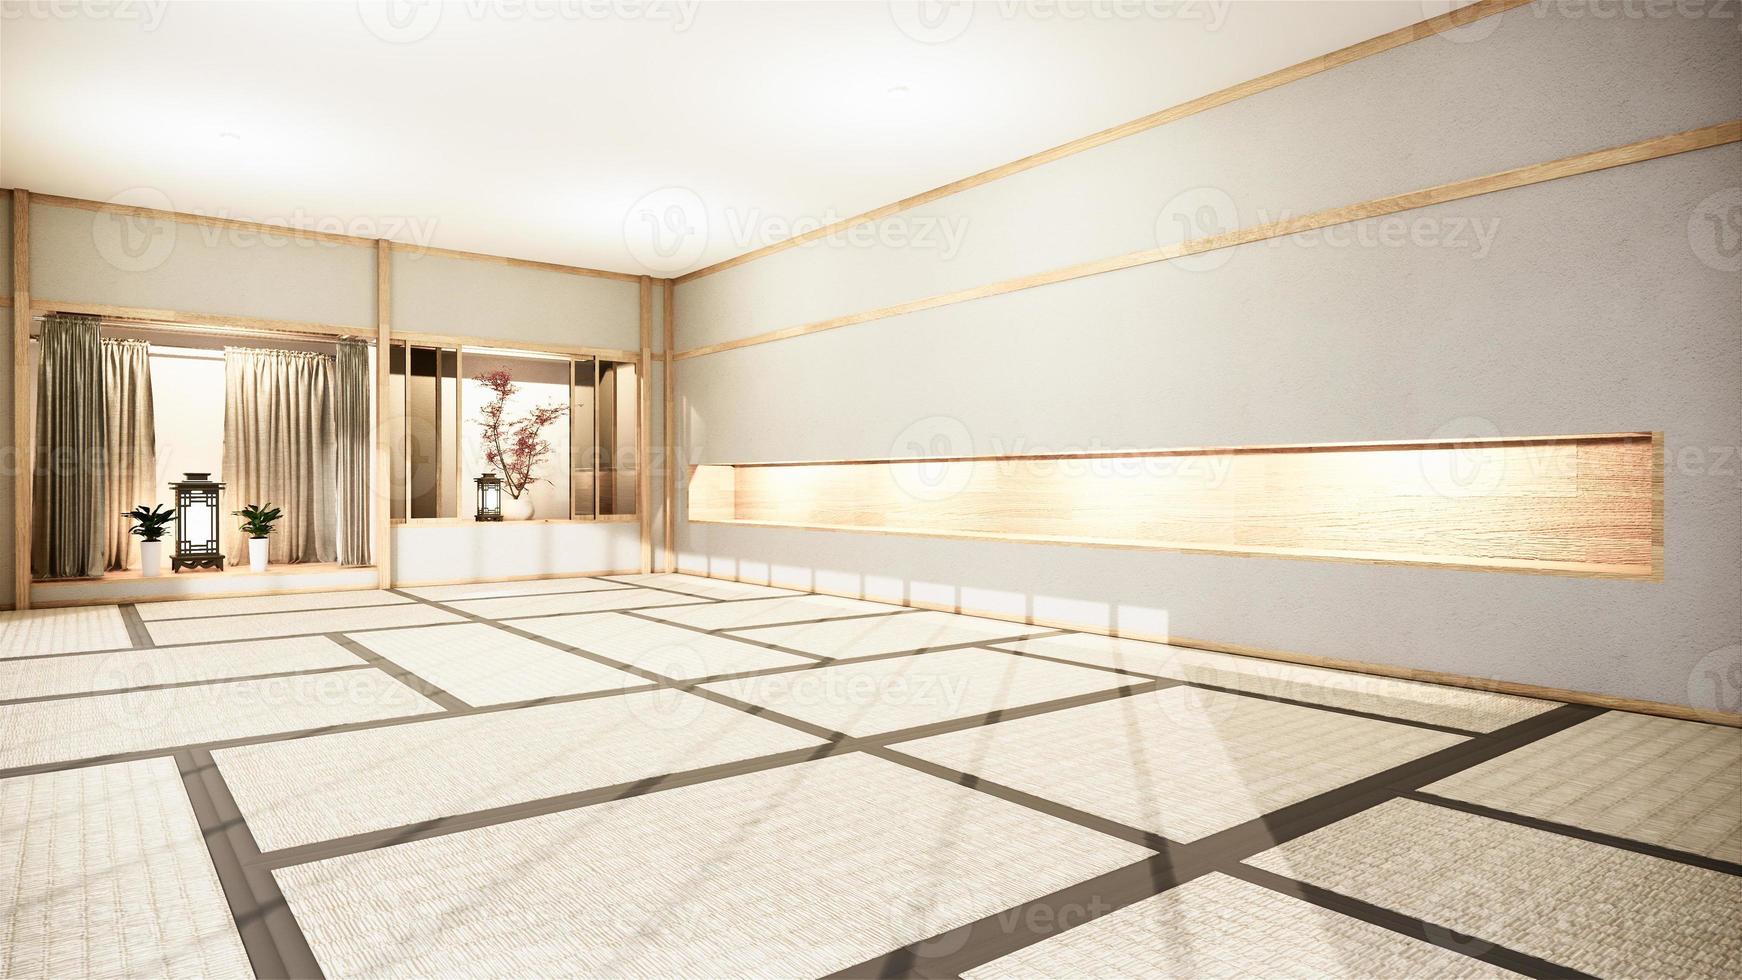 Fondo interior de la habitación nihon con pared de estante Diseño de estilo japonés Luz oculta Representación 3D foto